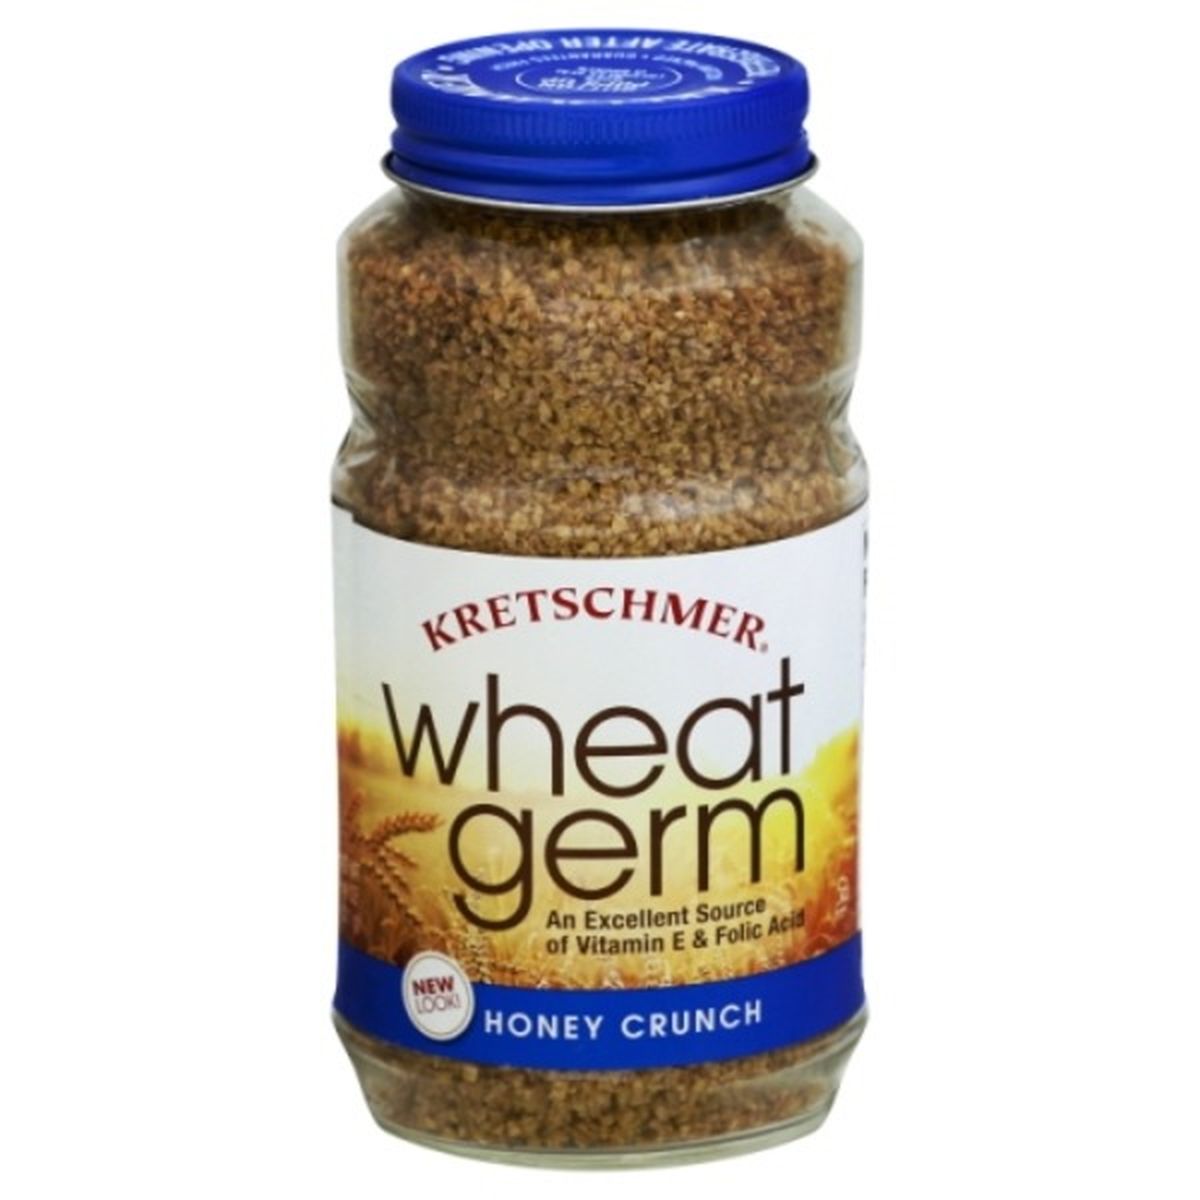 Calories in Kretschmer Wheat Germ, Honey Crunch